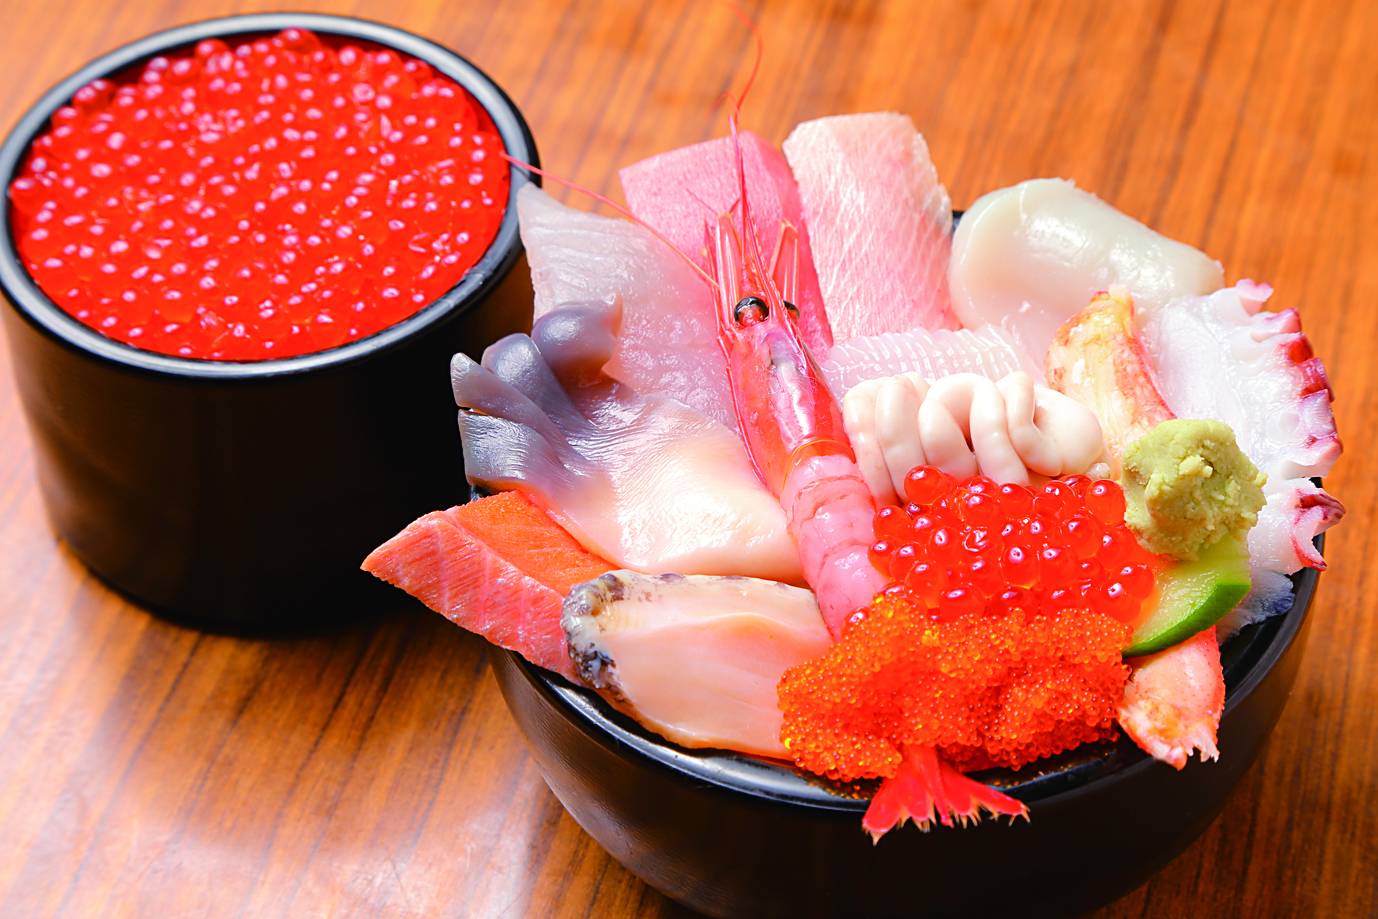 四季折々の地物魚介類の握り寿司やいくら丼を味わえます。
２０１２年、２０１７年にミシュラン北海道版　比較的安価で質の高い料理を提供する
「ビブグルマン」に選ばれました！
